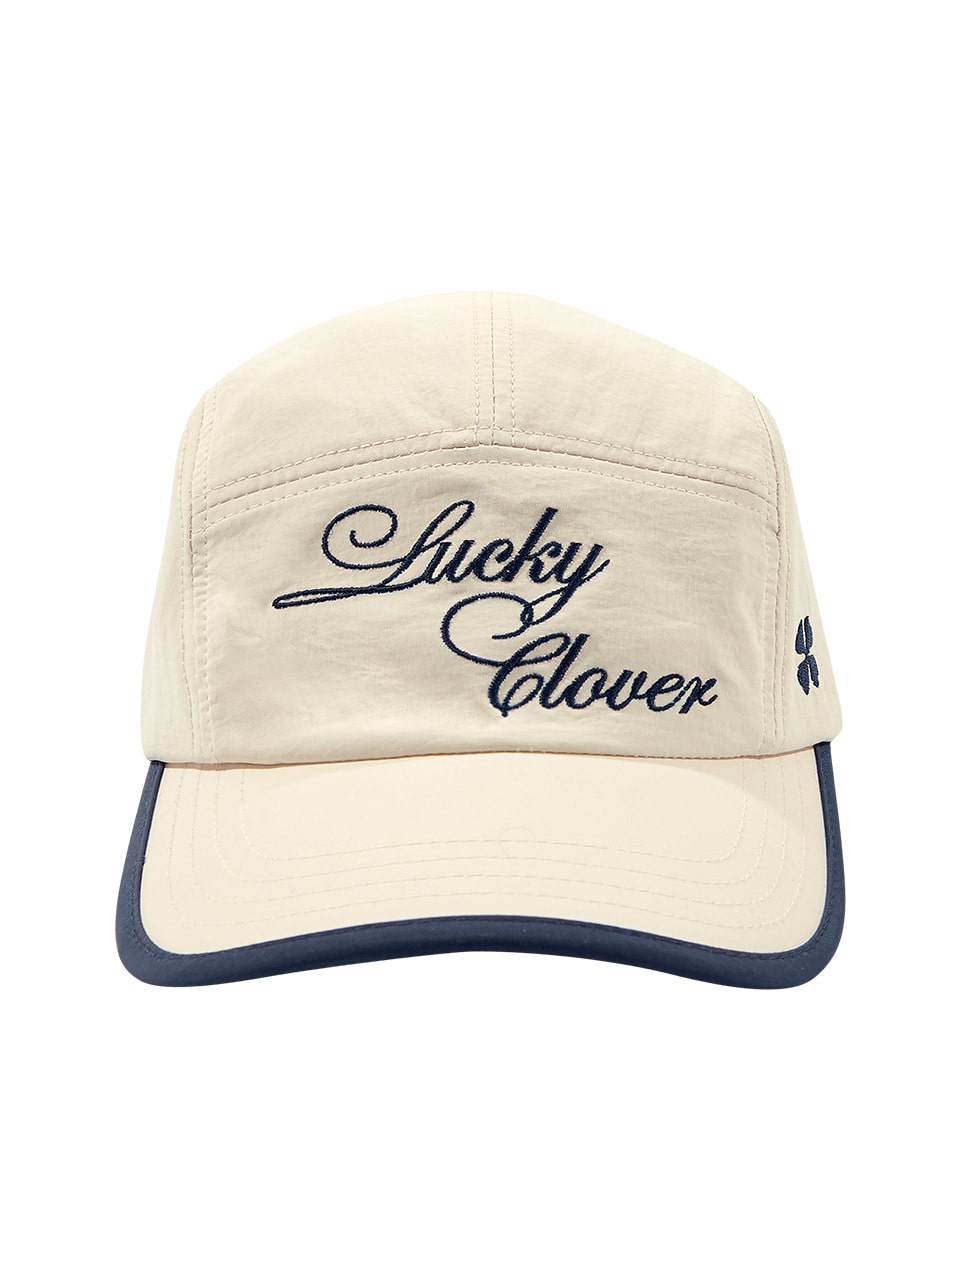 LUCKY CLOVER CAMP CAP (CREAM NAVY)